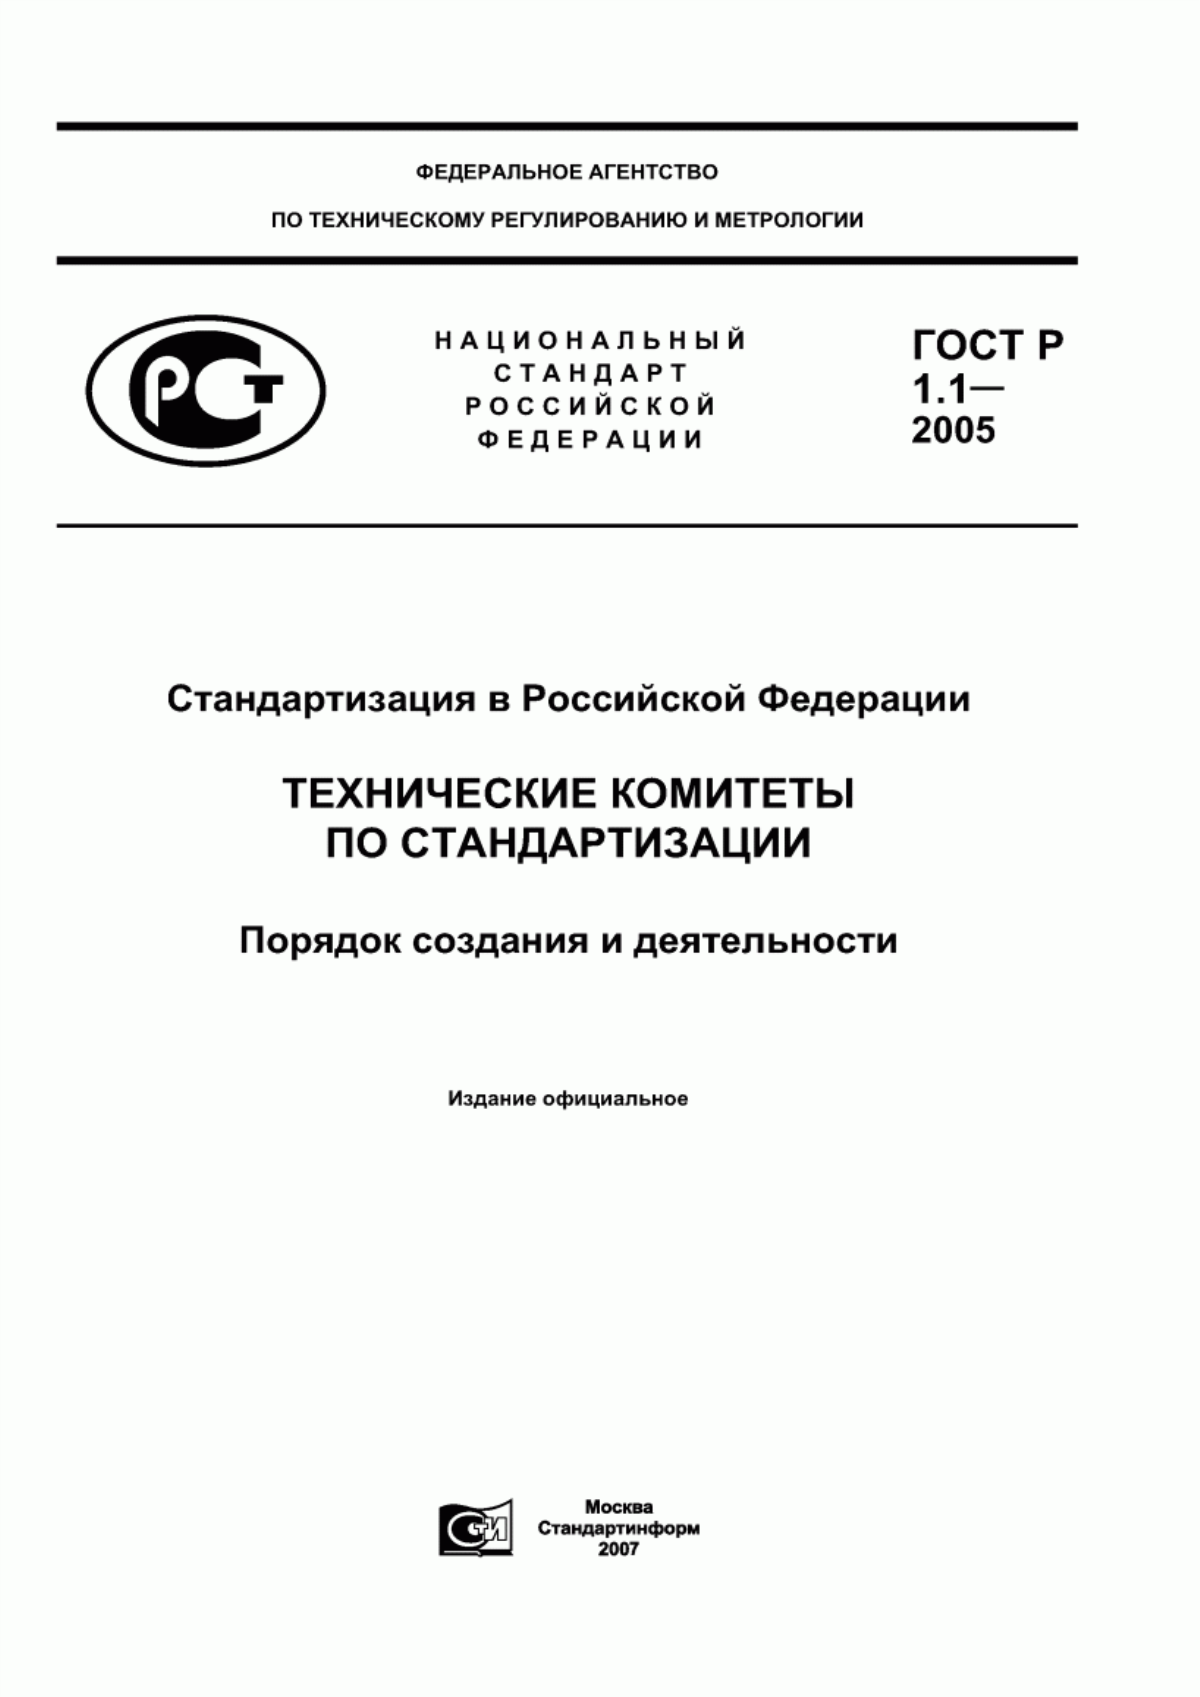 ГОСТ Р 1.1-2005 Стандартизация в Российской Федерации. Технические комитеты по стандартизации. Порядок создания и деятельности